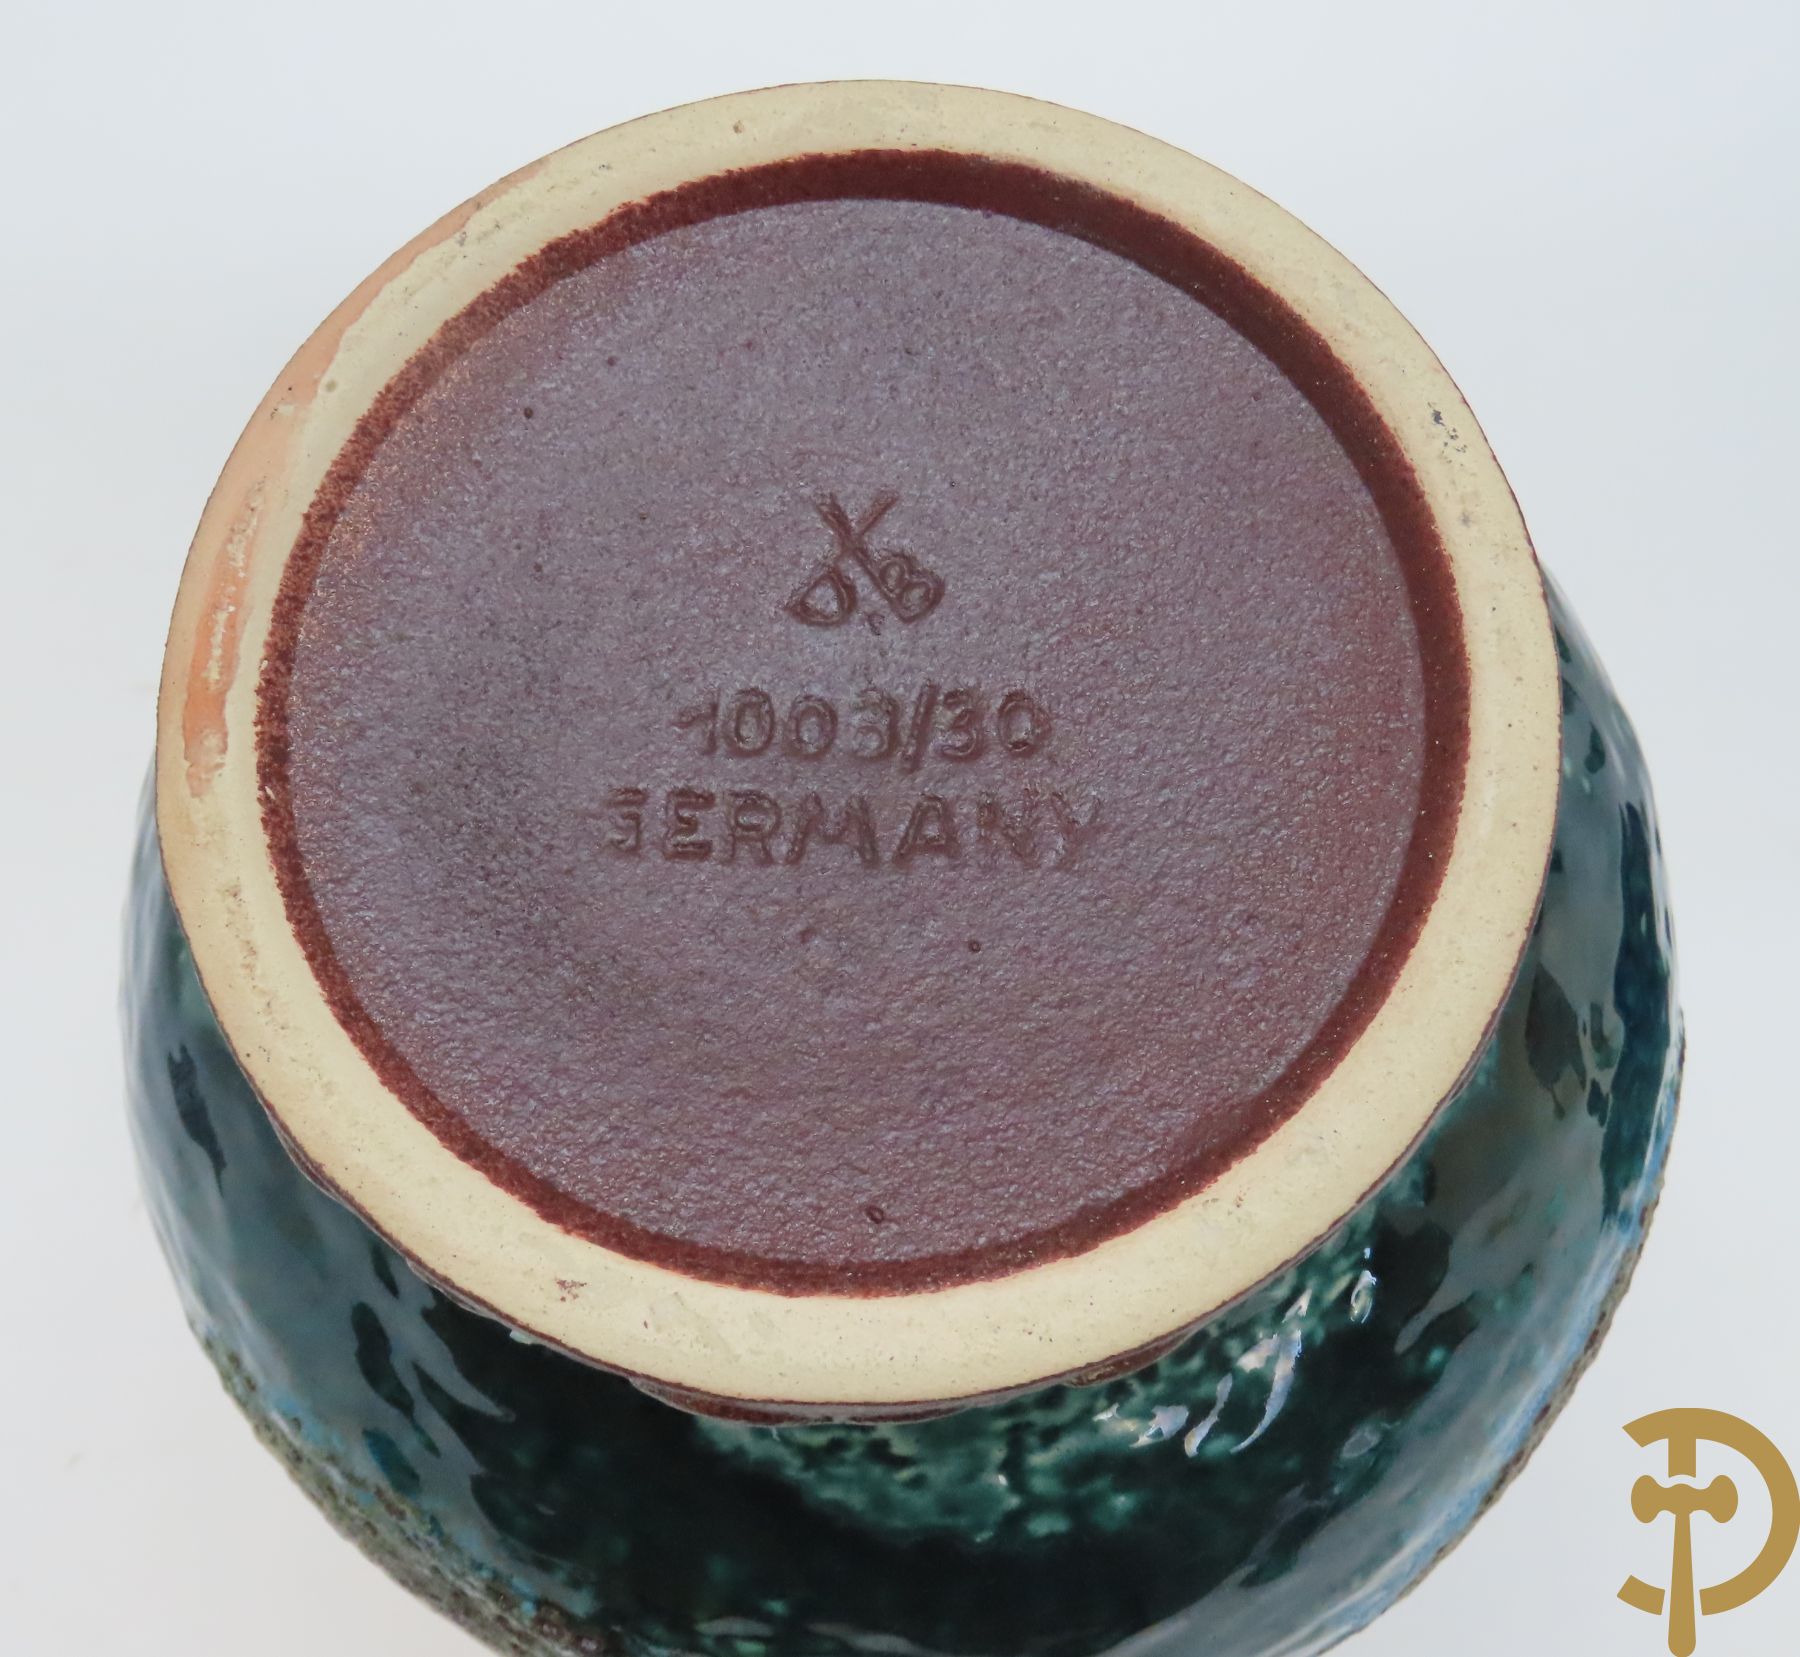 Vintage vaas, DB Germany gemerkt, jaren 